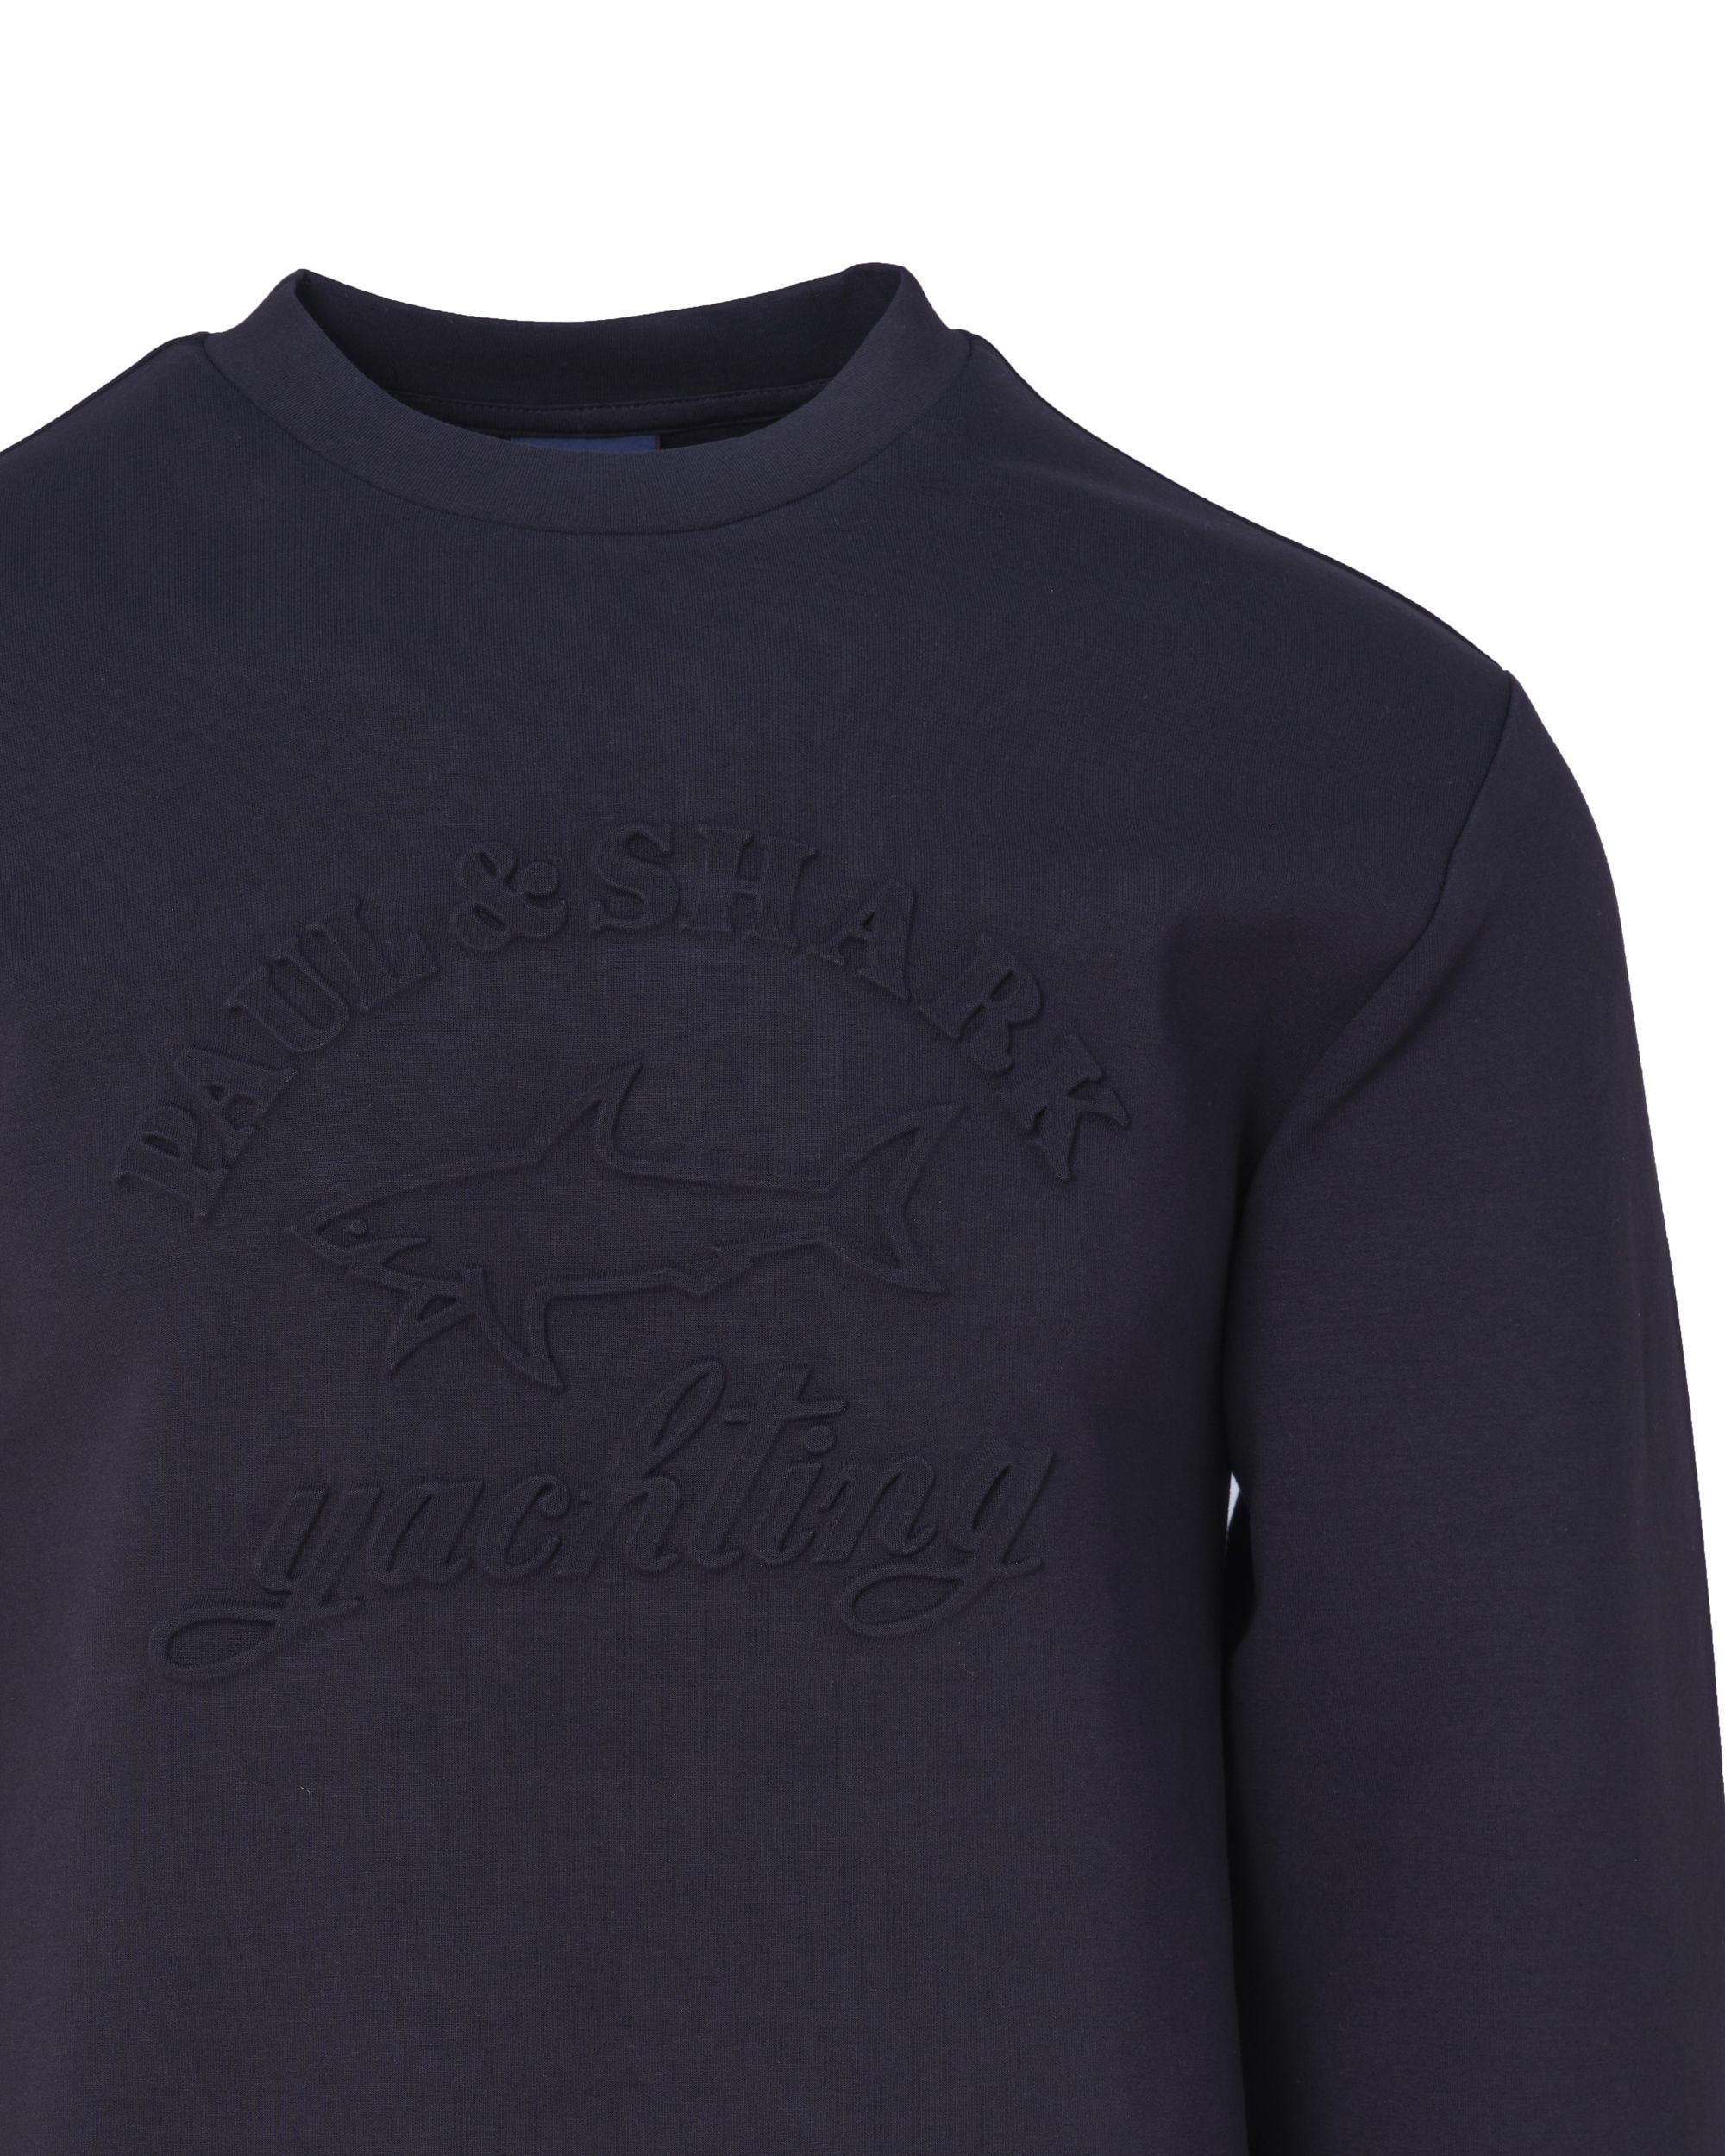 Paul & Shark Sweater Zwart 090806-001-L